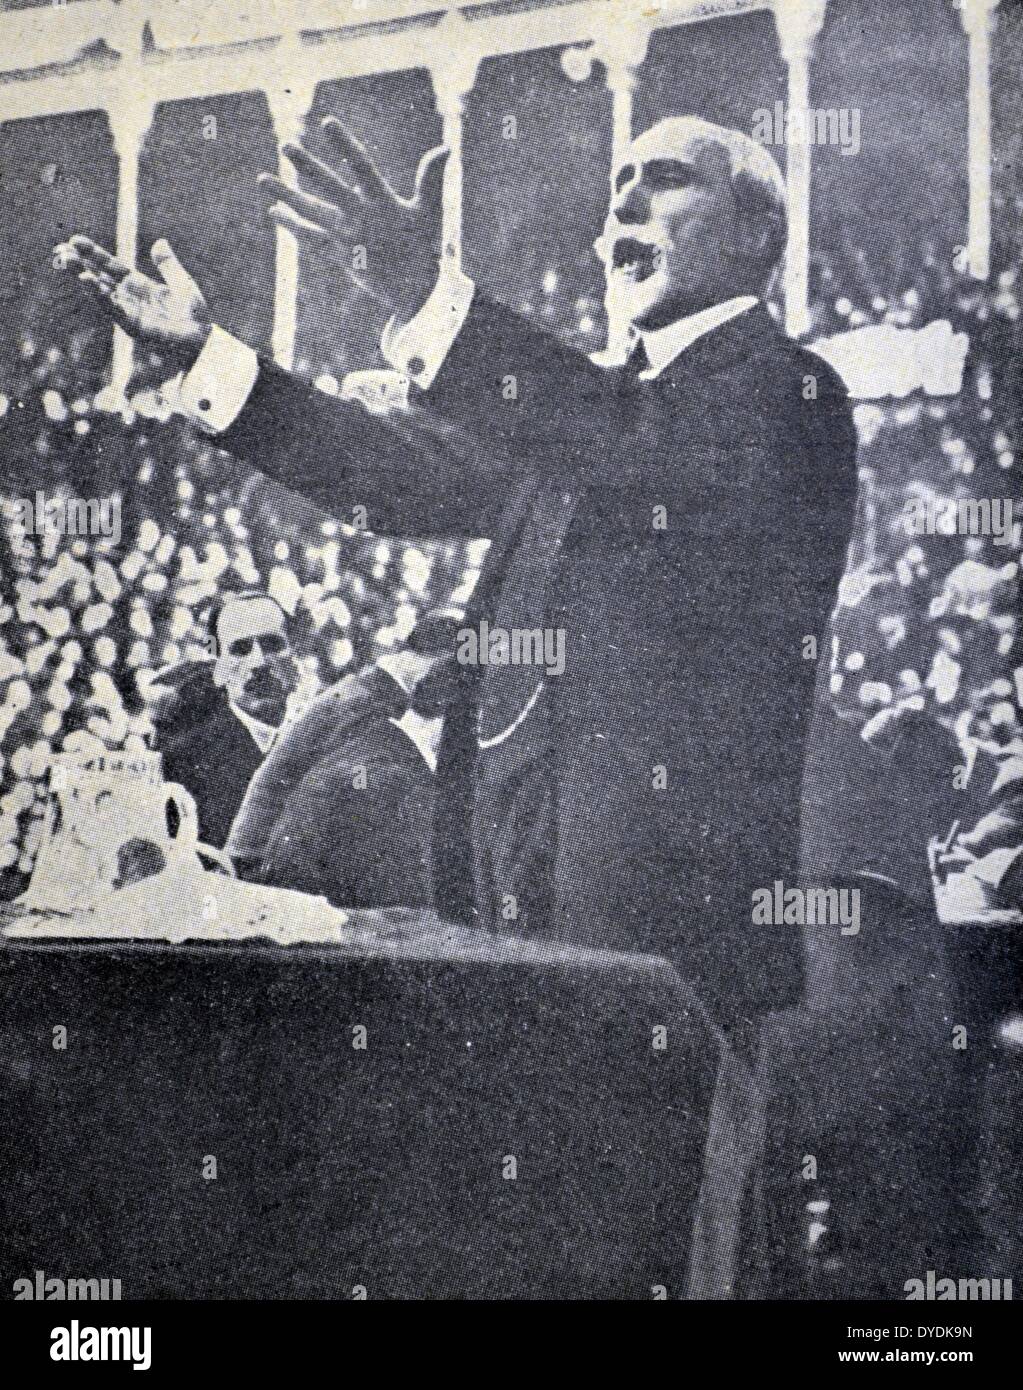 Antonio Maura y Montaner war Ministerpräsident von Spanien auf fünf verschiedenen Gelegenheiten: 5. Dezember 1903 und 16. Dezember 1904, vom 25. Januar 1907 bis 21. Oktober 1909, vom 22. März 1918 - 9. November 1918, am 14. April 1919 - vom 20. Juli 1919 und 13. August 1921 - 8. März 1922 Stockfoto